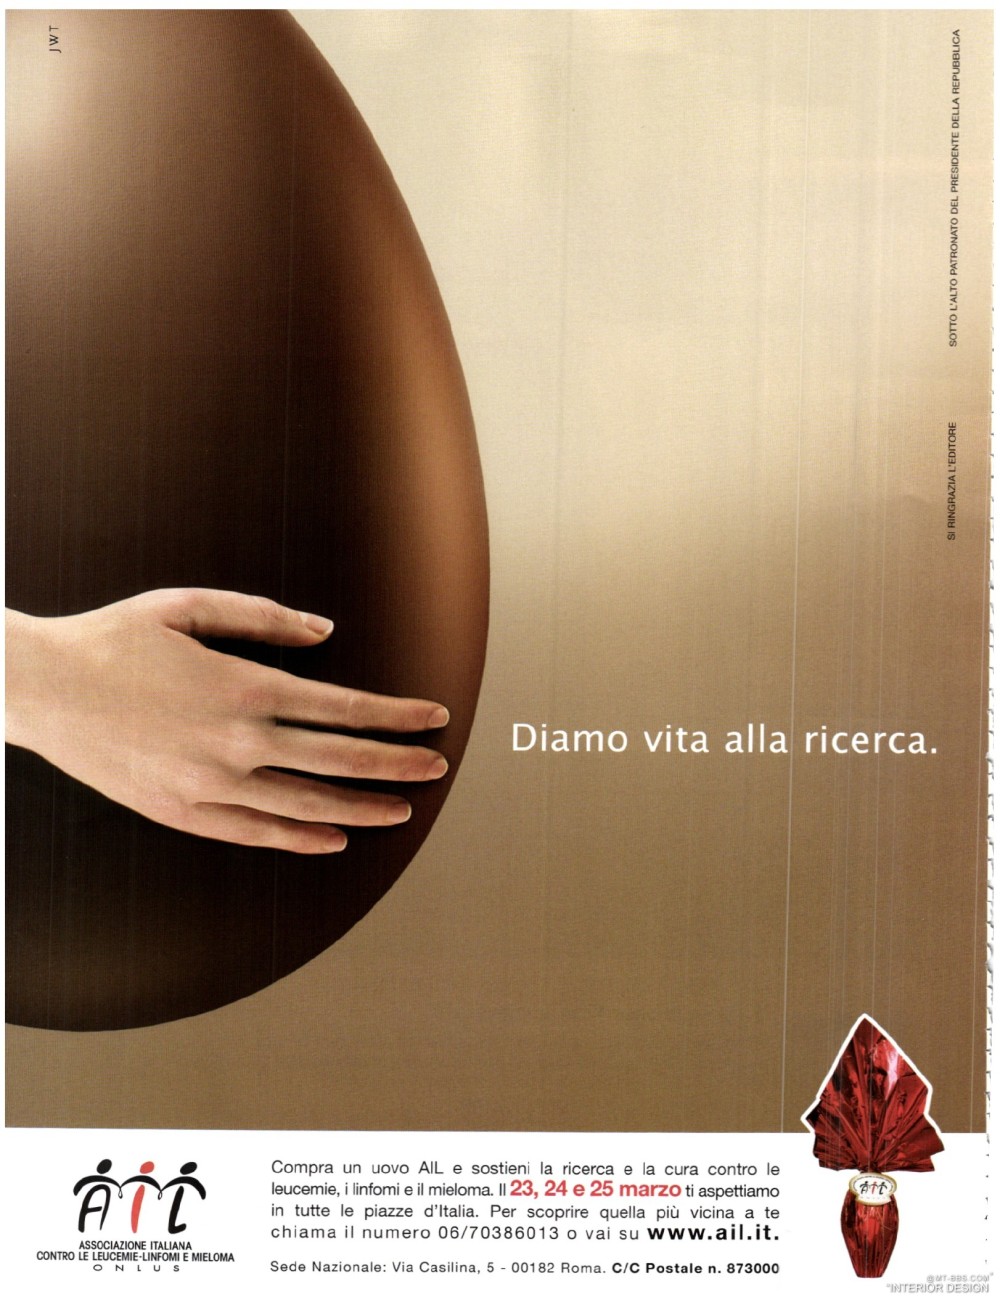 意大利AD 杂志 2012年全年JPG高清版本 全免（上传完毕）_0222.jpg